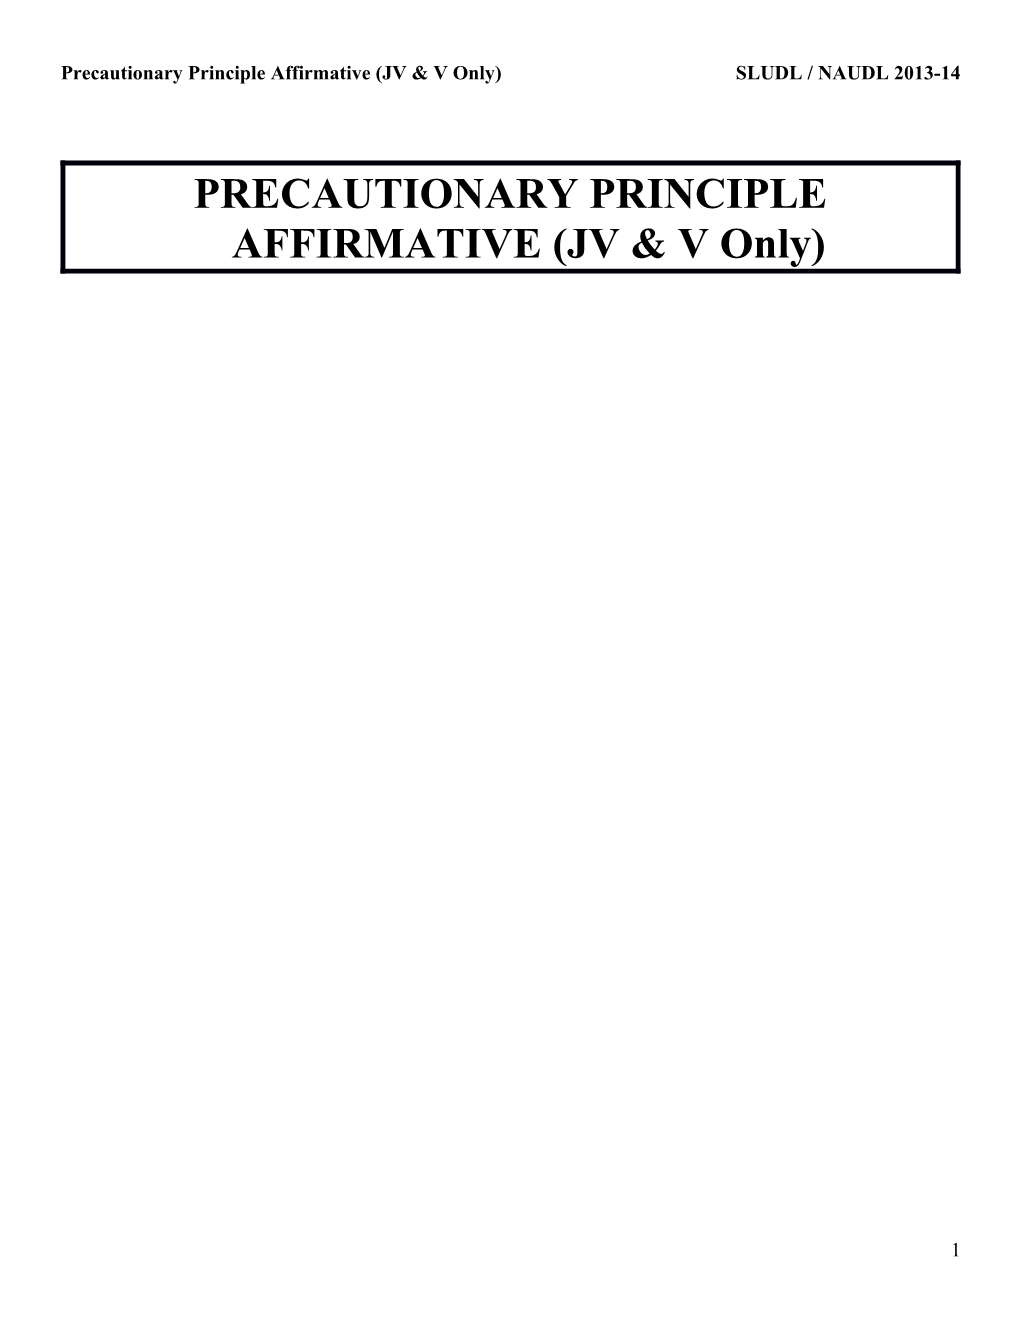 Precautionary Principle Affirmative (JV & V Only) SLUDL / NAUDL 2013-14